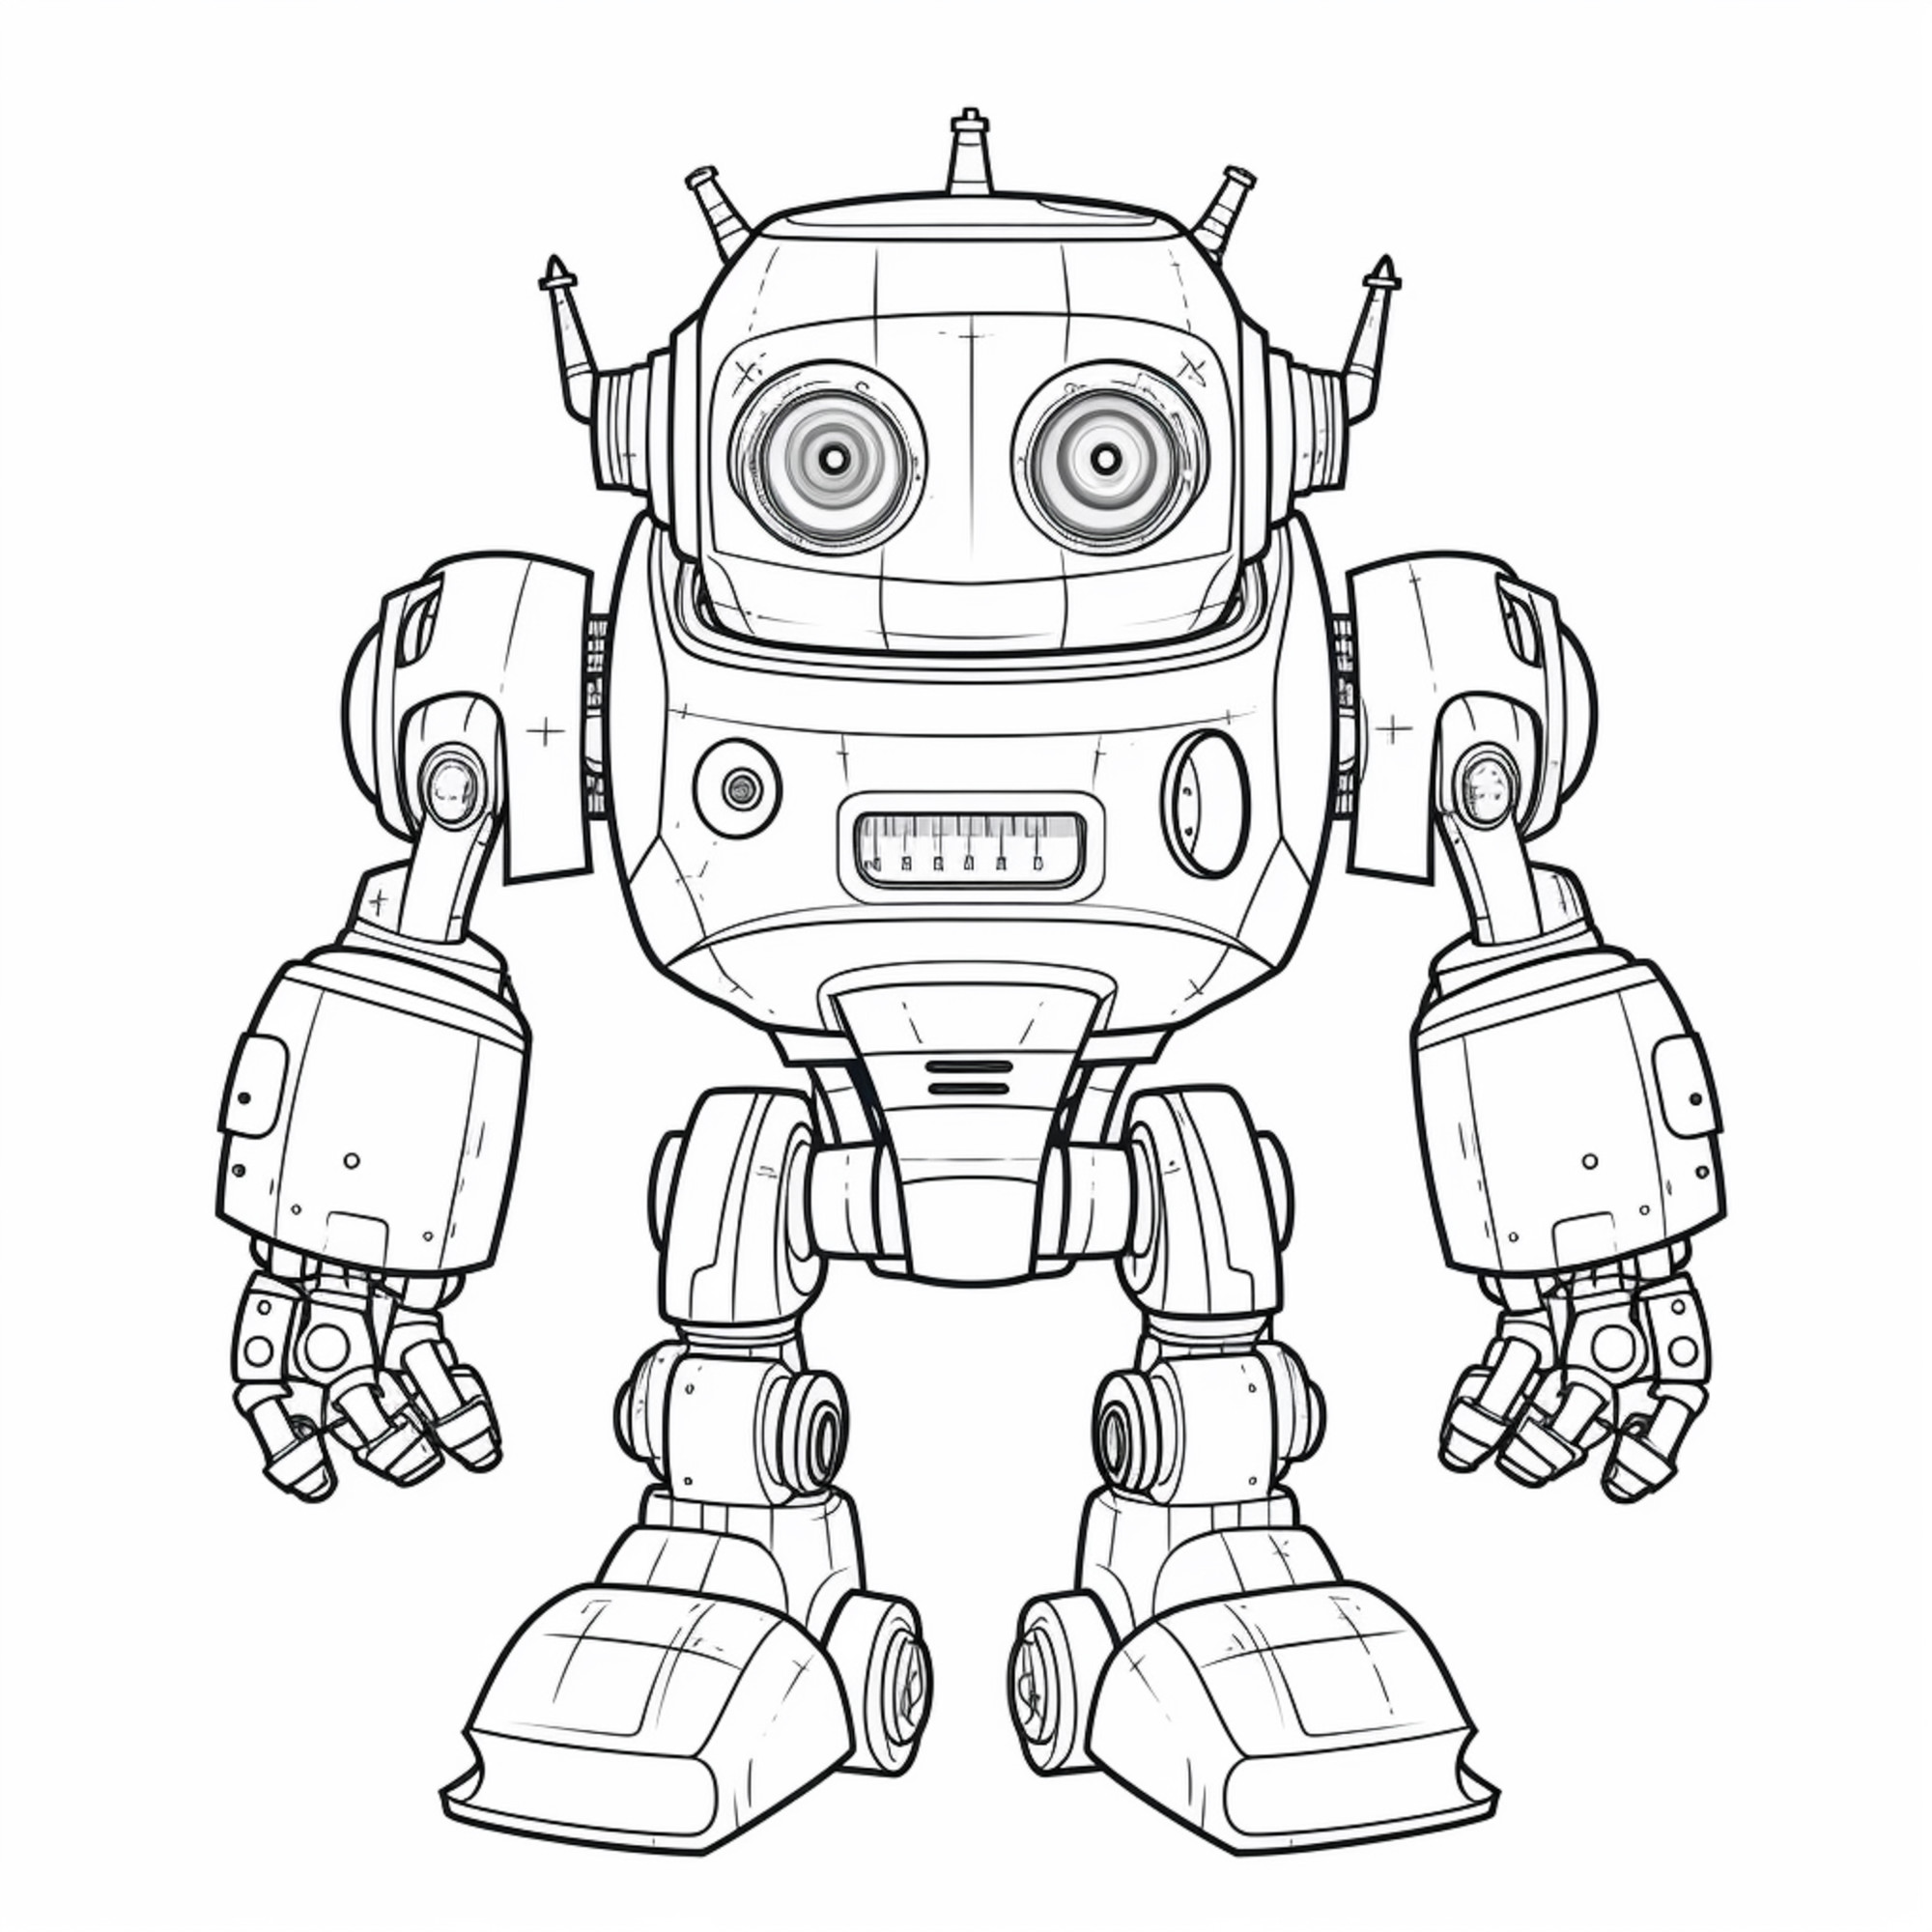 Раскраска для детей: робот с большой головой и двумя руками